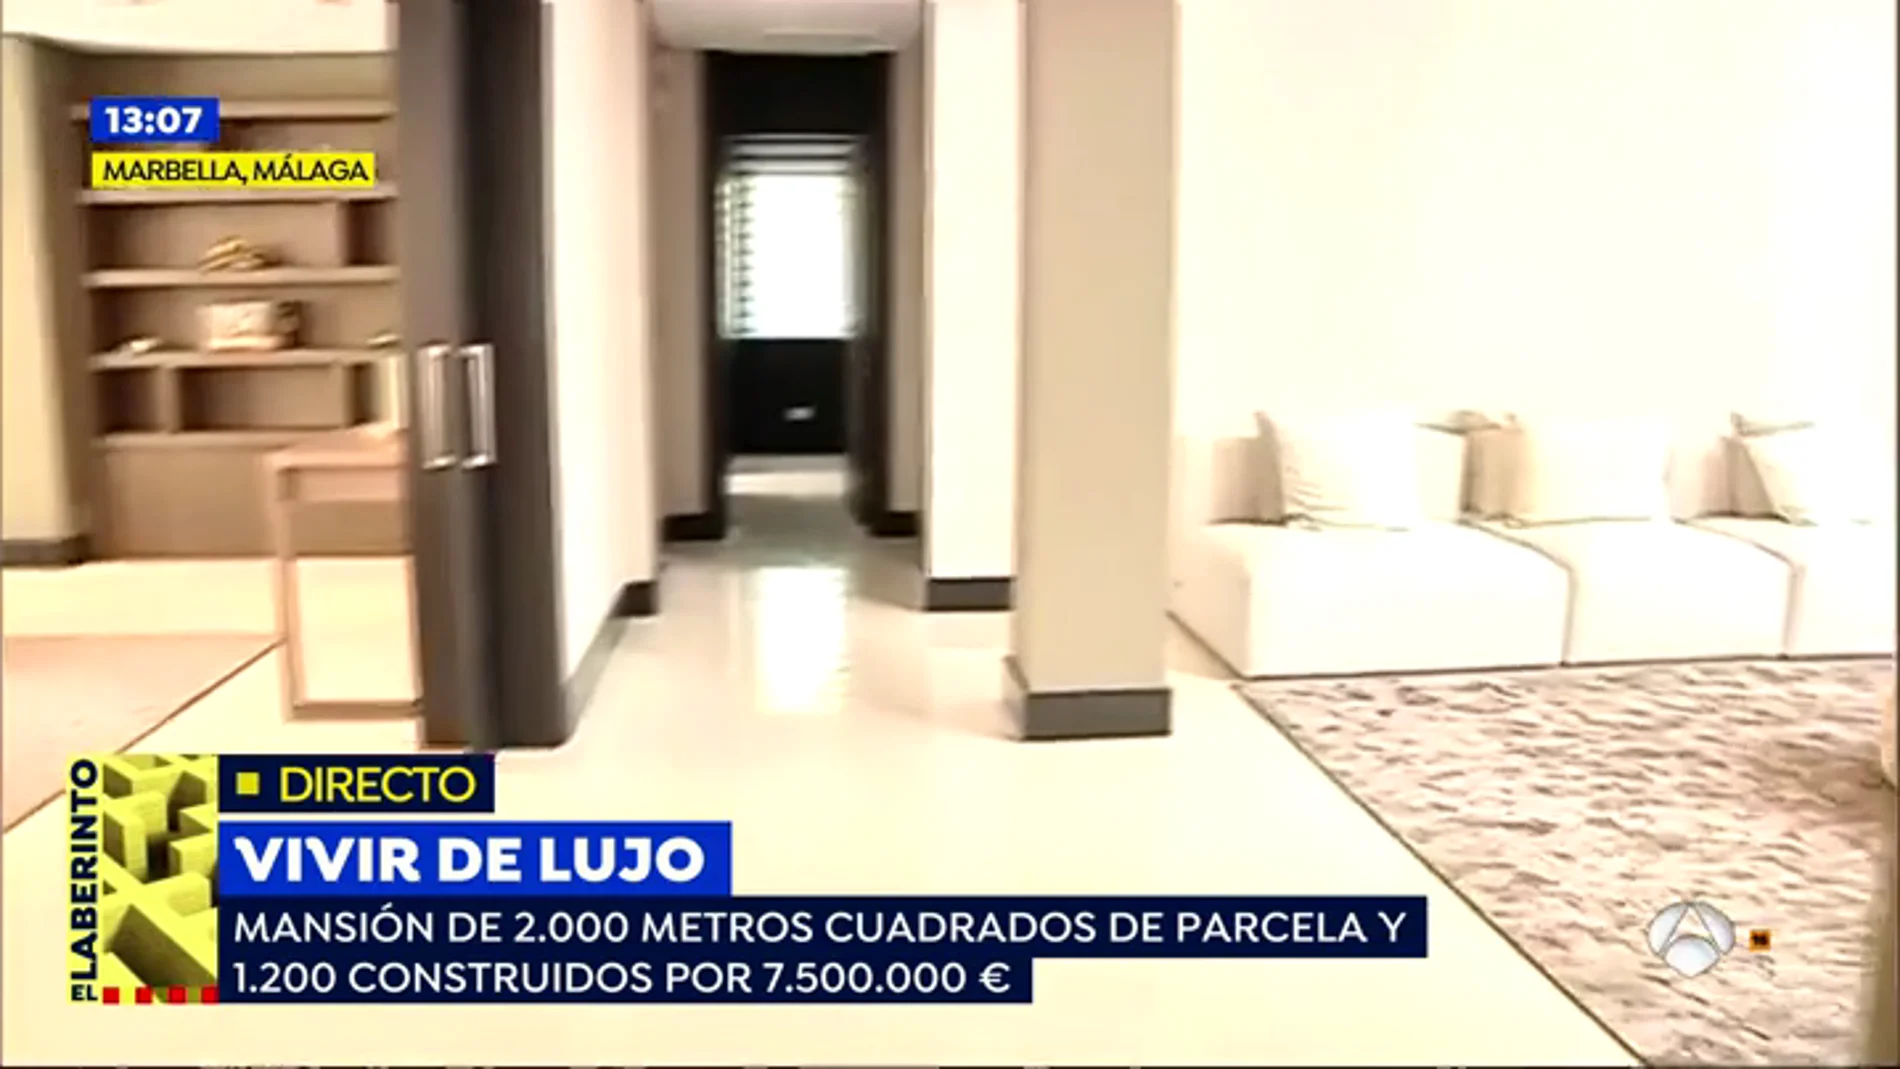 Descubrimos las casas del lujo: opulenta mansión en la costa o lechería reconvertida en 'loft' en Madrid